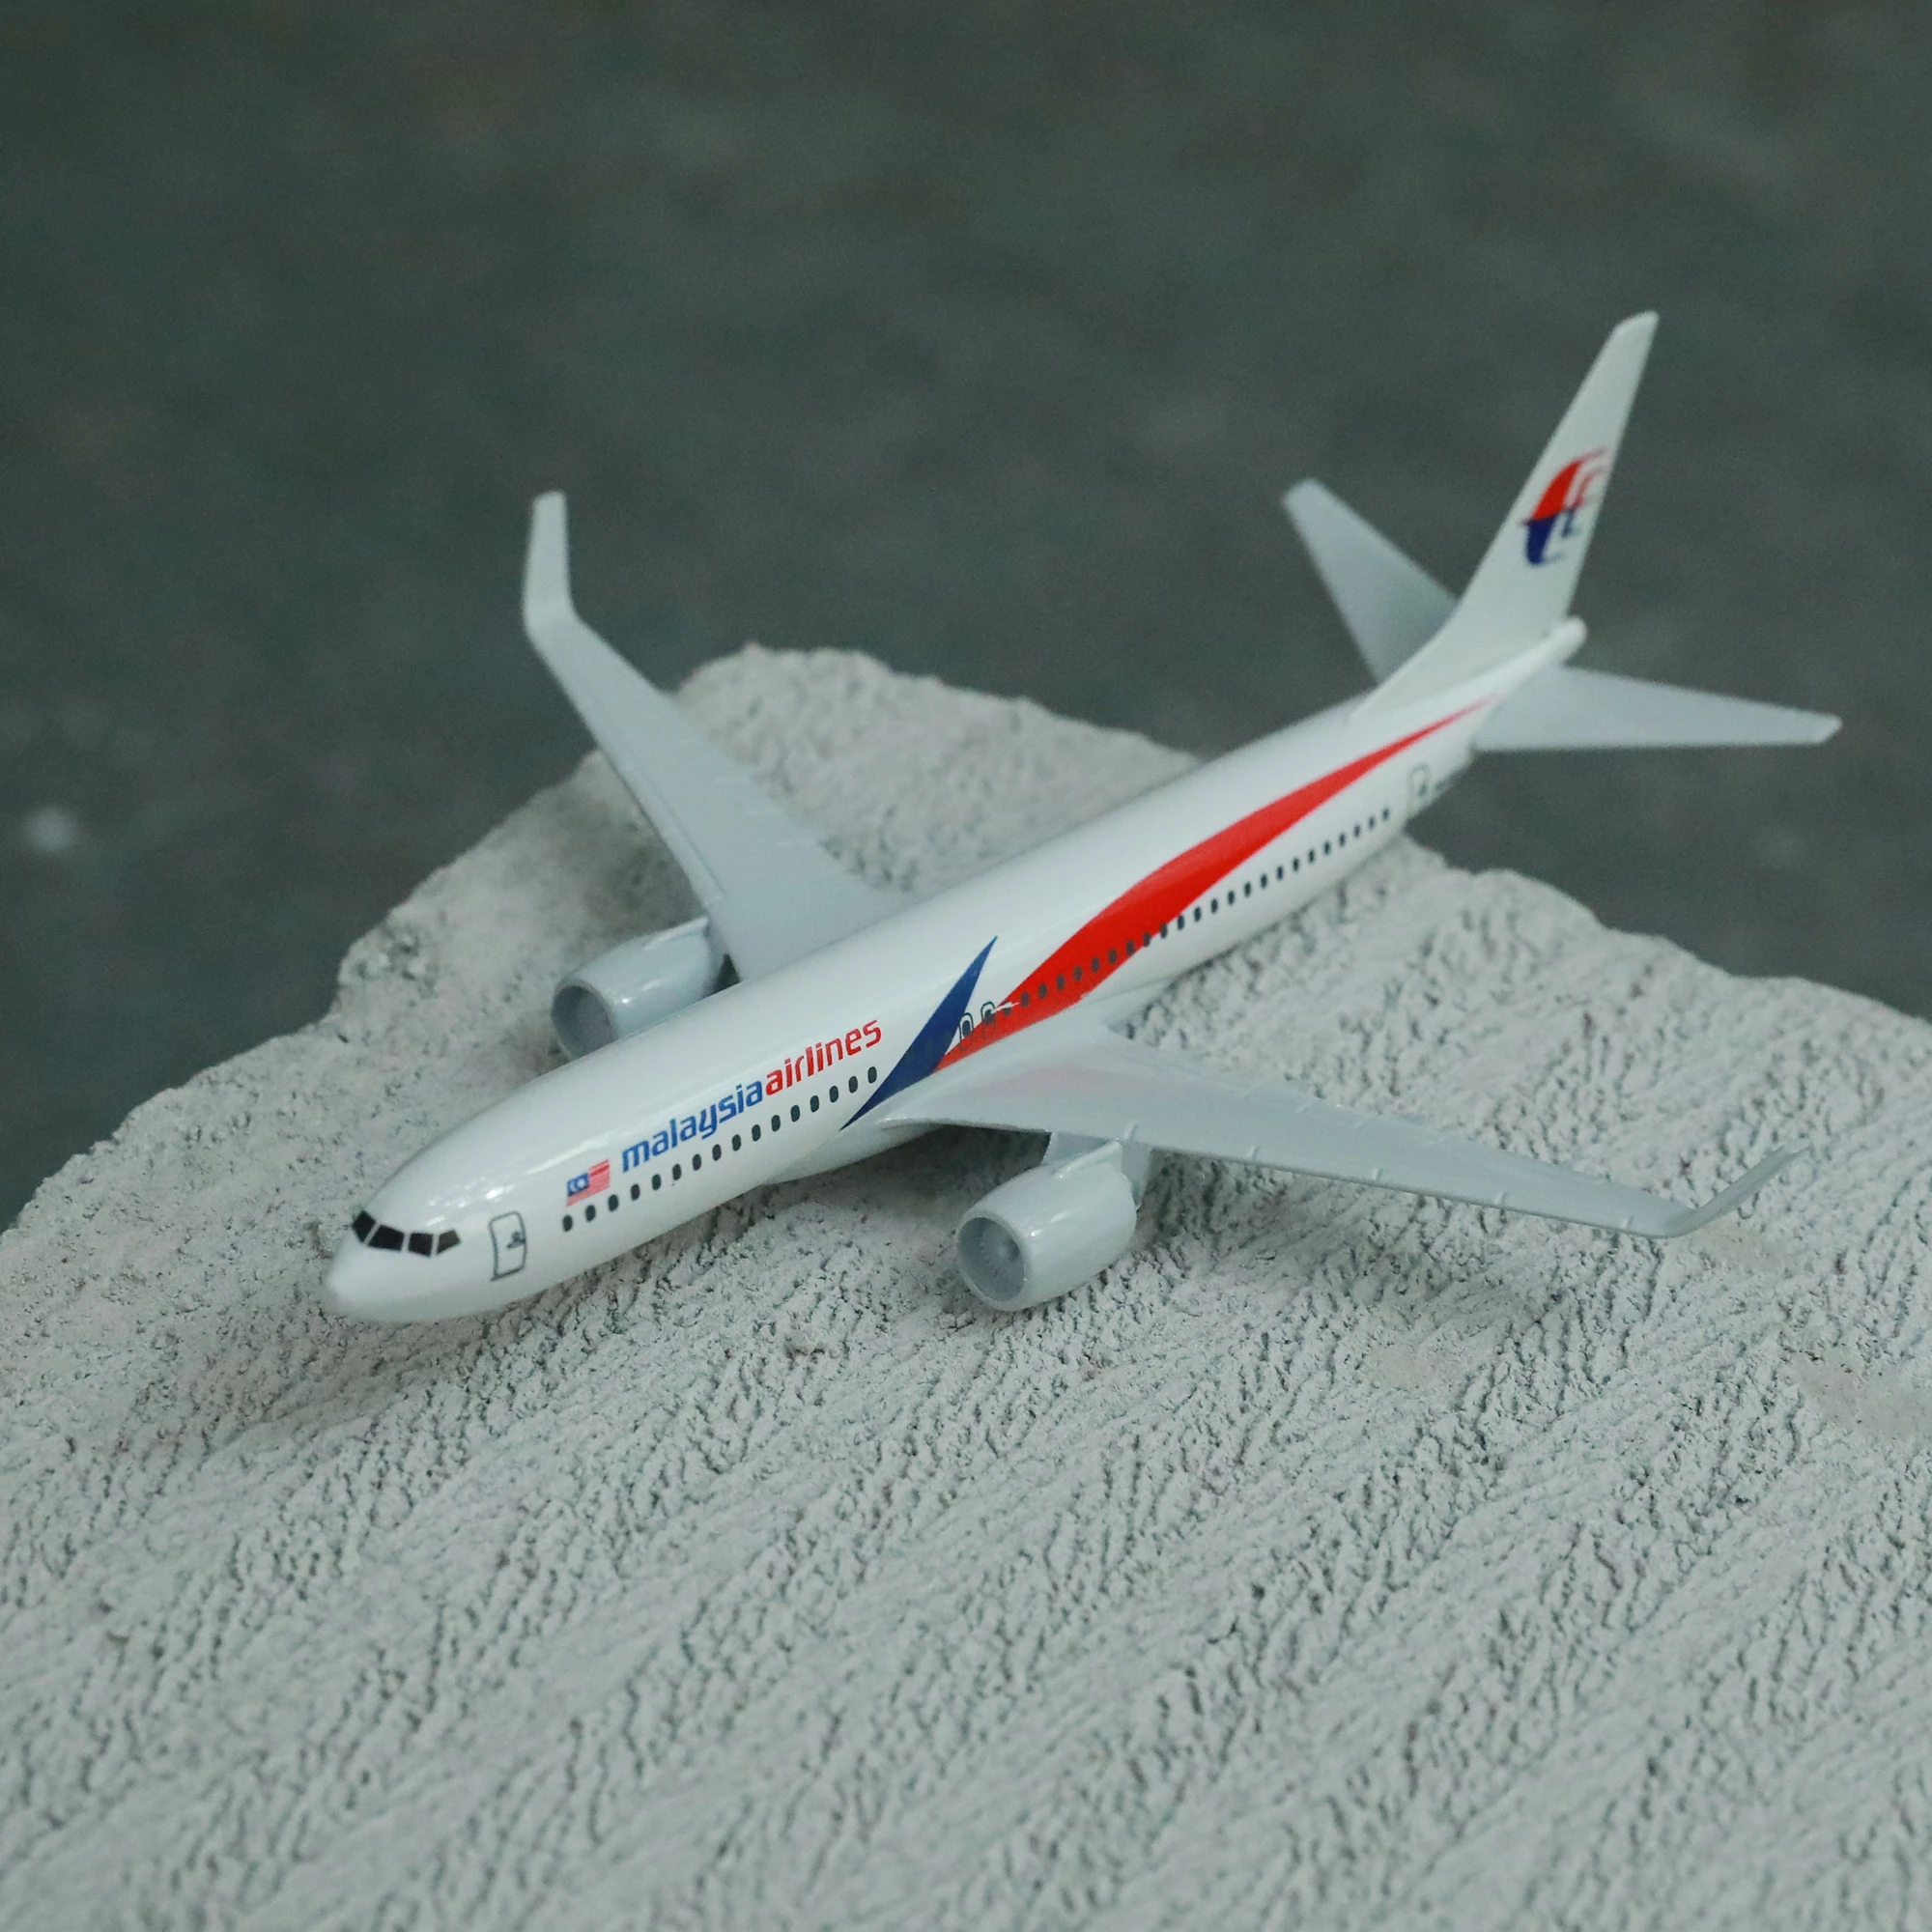 

Модель самолета Malaysia Airlines, модель самолета Боинг 737, 6 дюймов, металлический самолёт, коллекция миниатюрных мото, Eduactional игрушки для детей